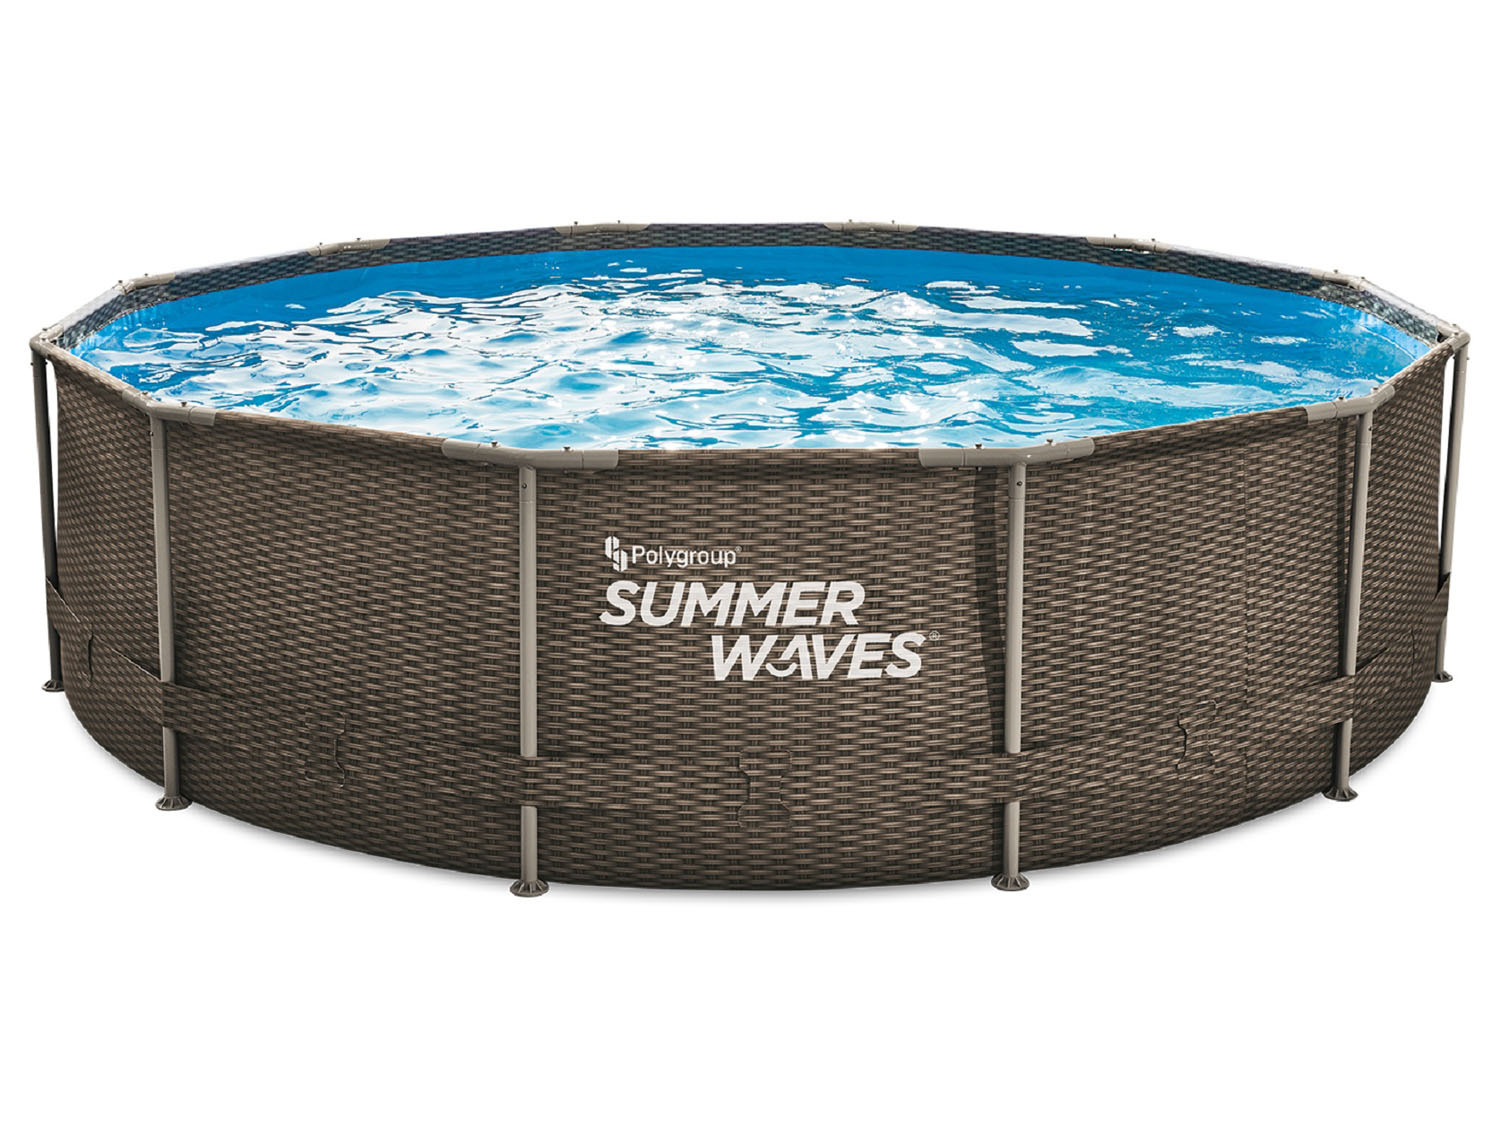 Summer Waves Active Frame LIDL cm x Ø 91 Pool, 366 